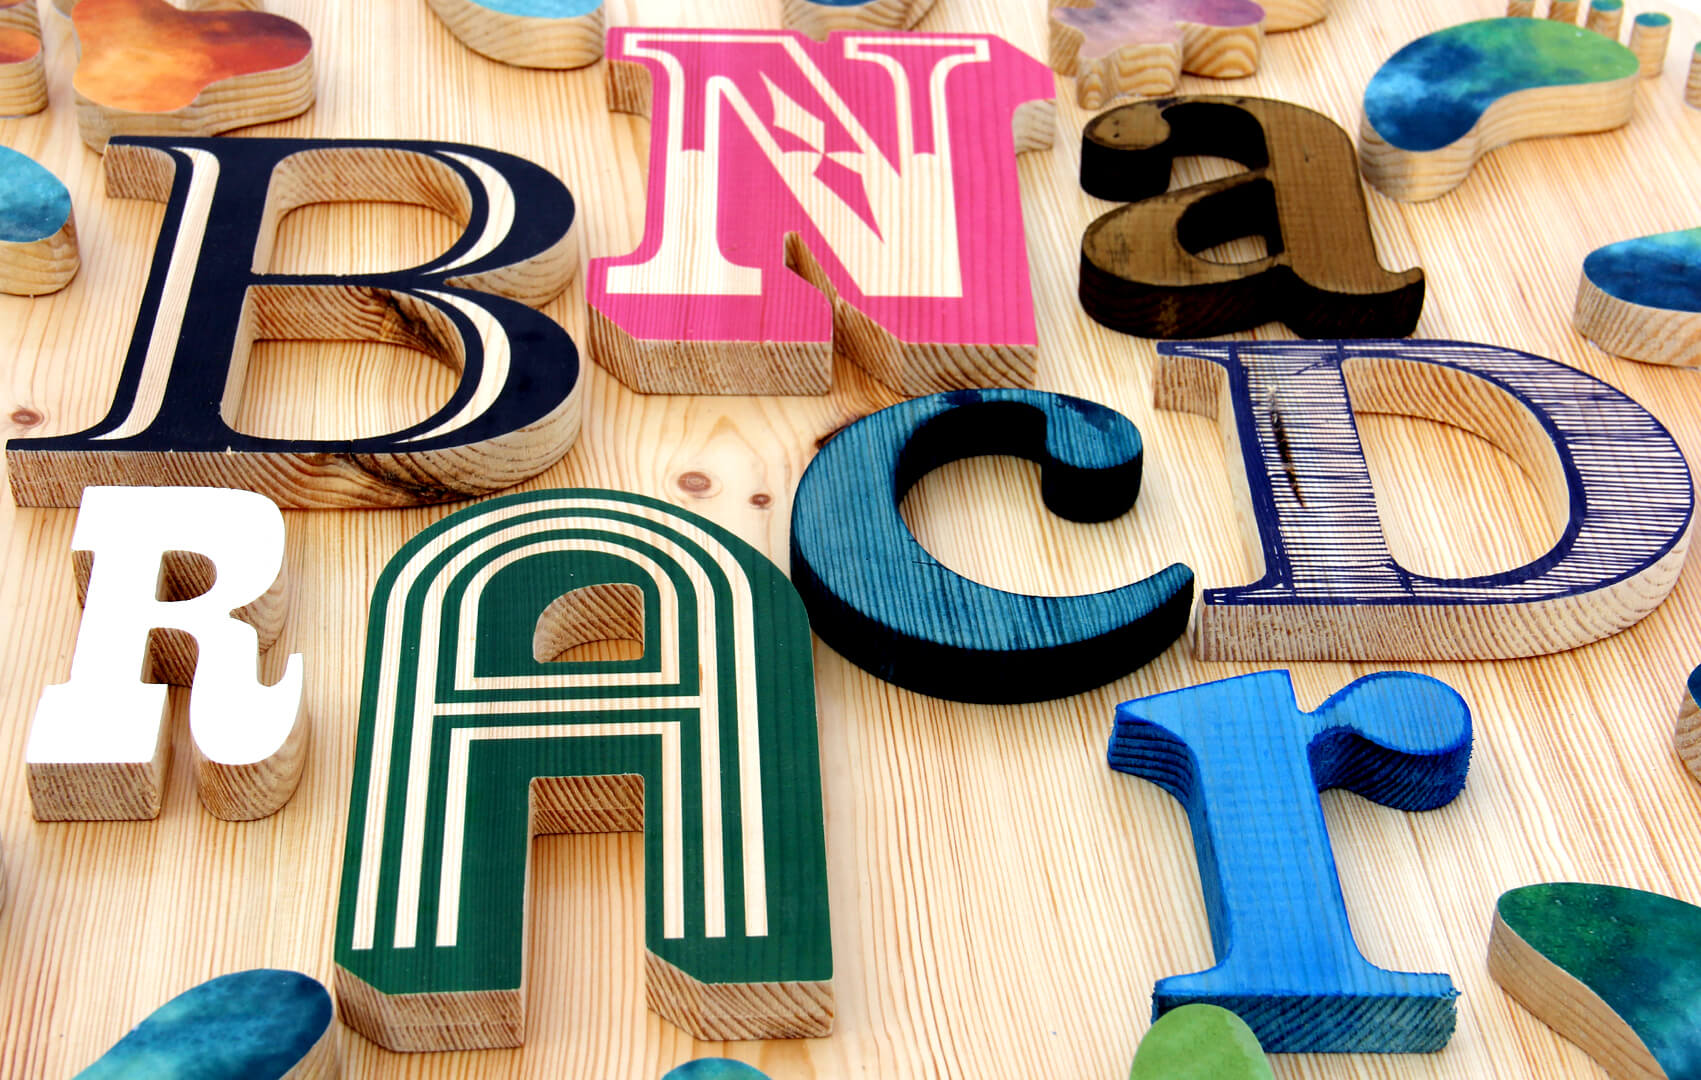 lettere di legno-DIY - lettere di legno-DIY-creative-letters-colored-wood-letters